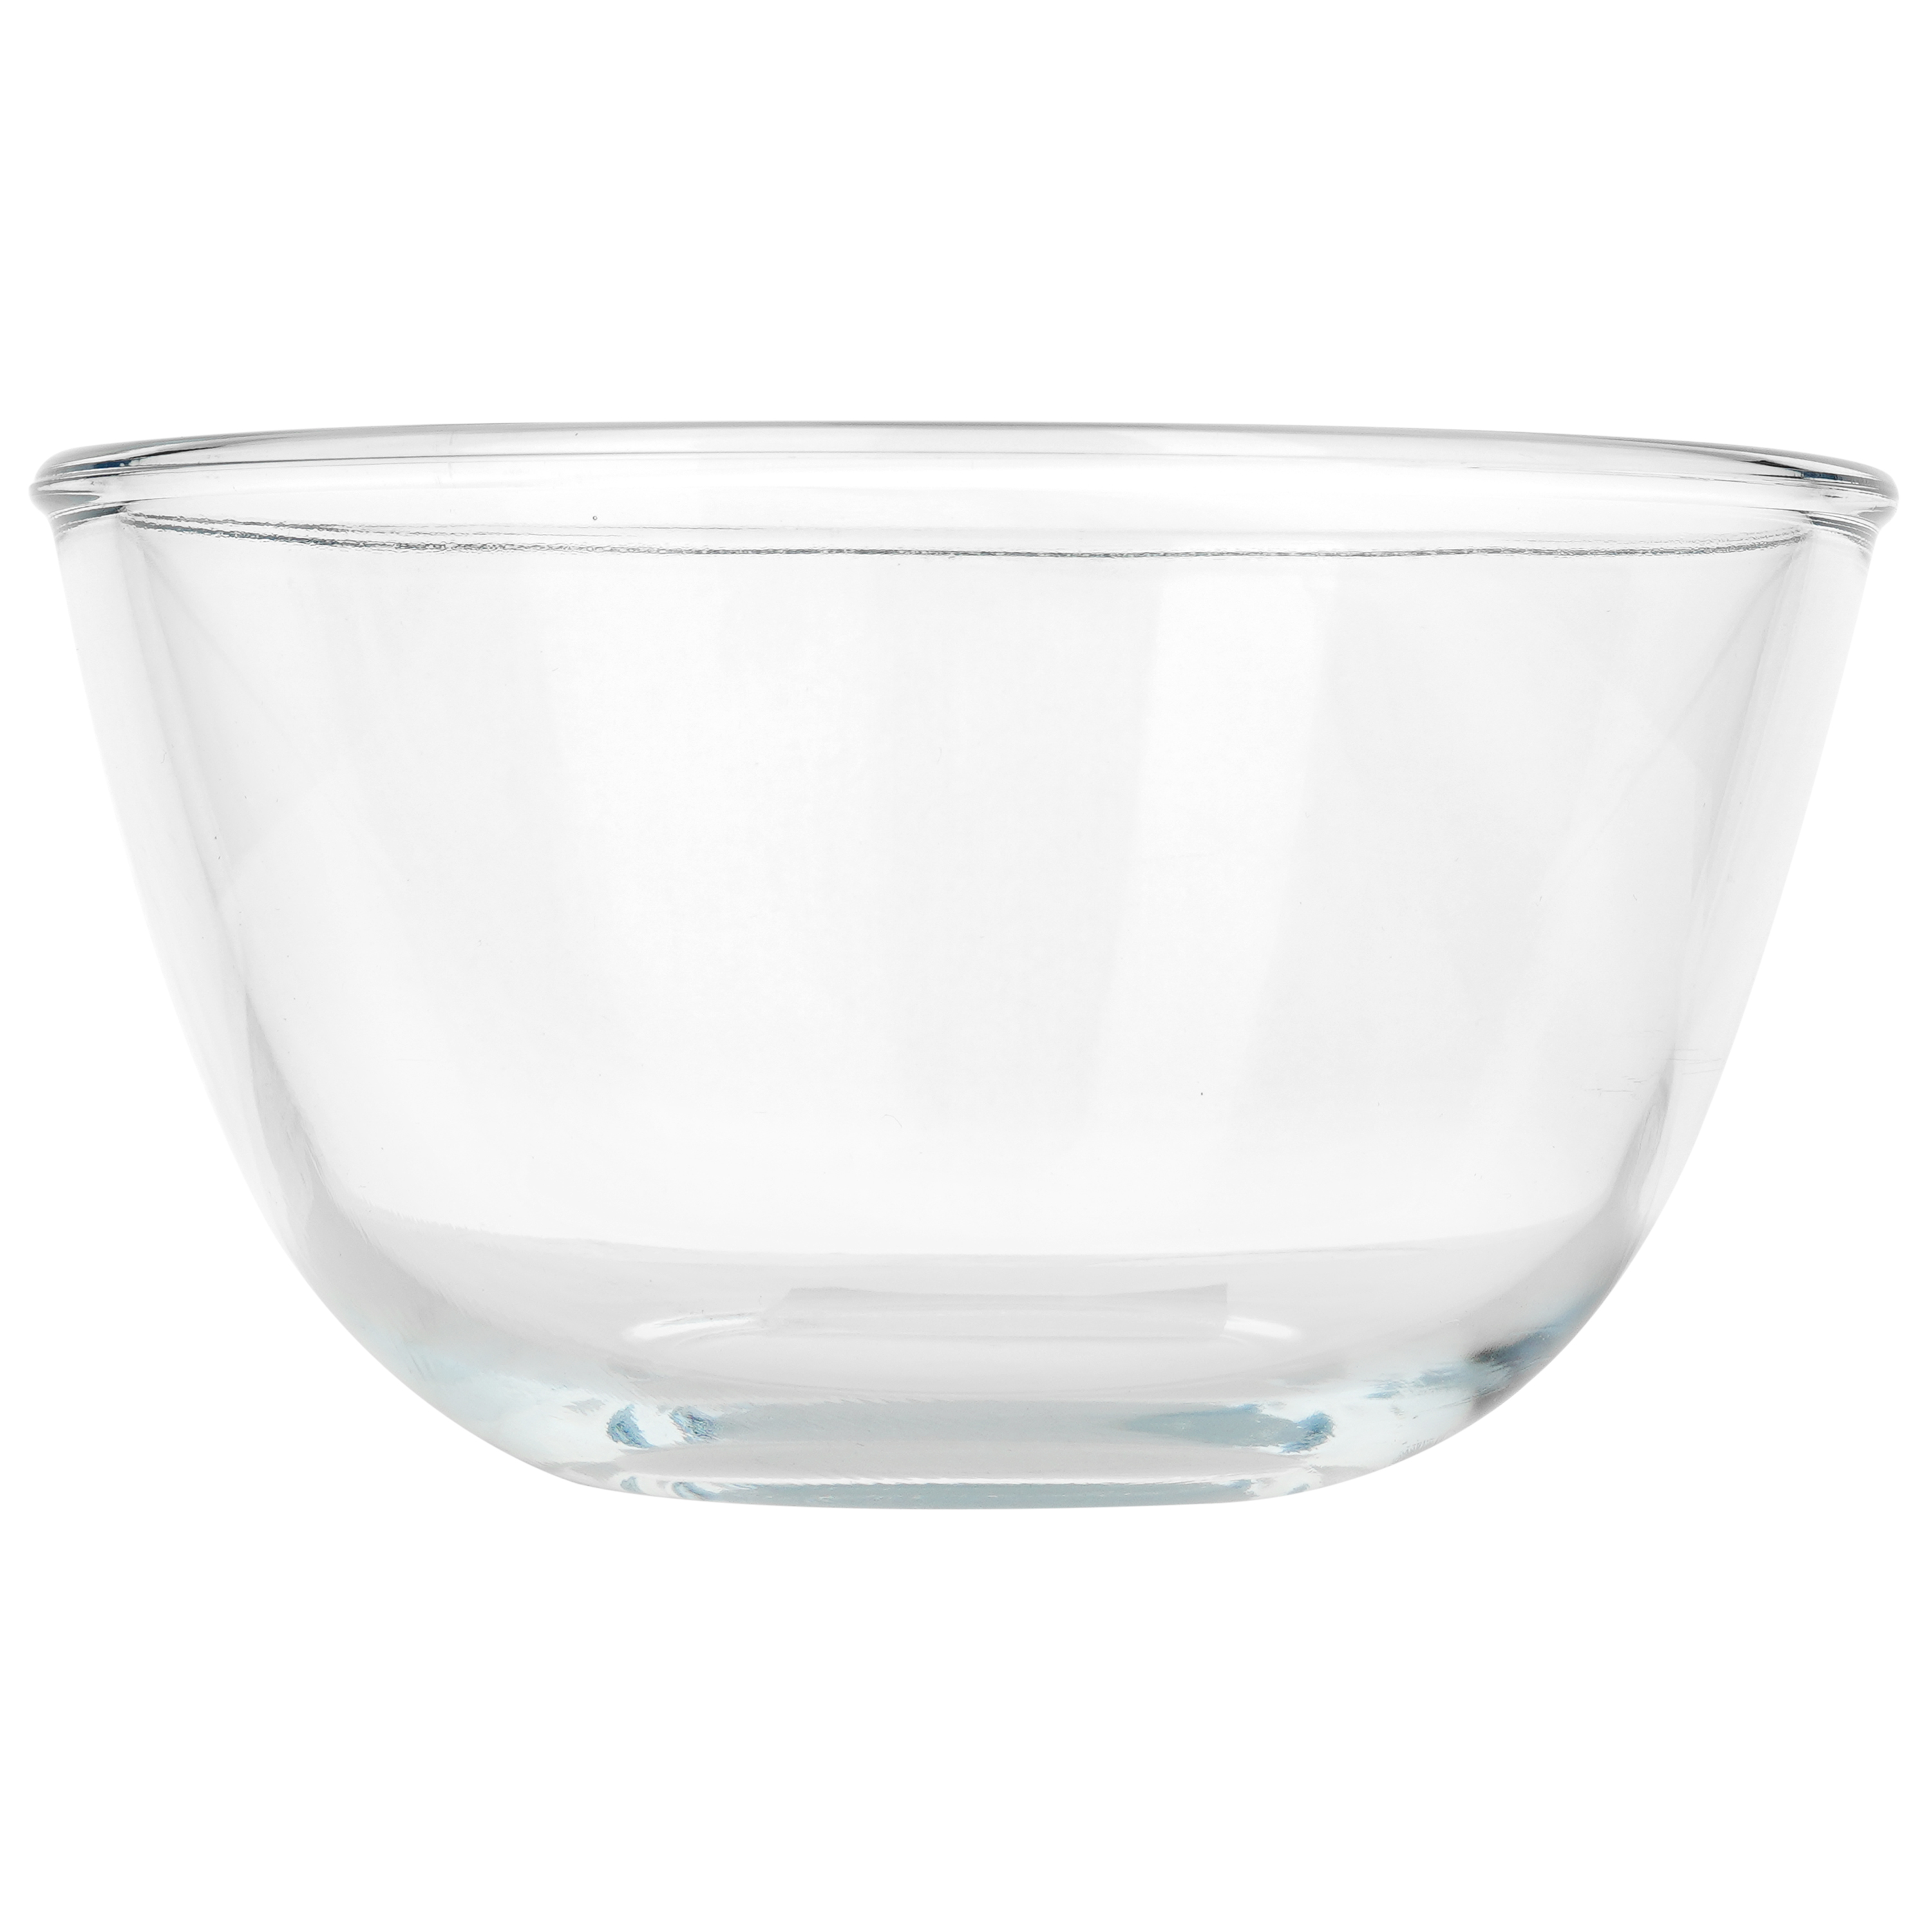 Салатник S&T скляний 15.2 см (33003) - фото 2